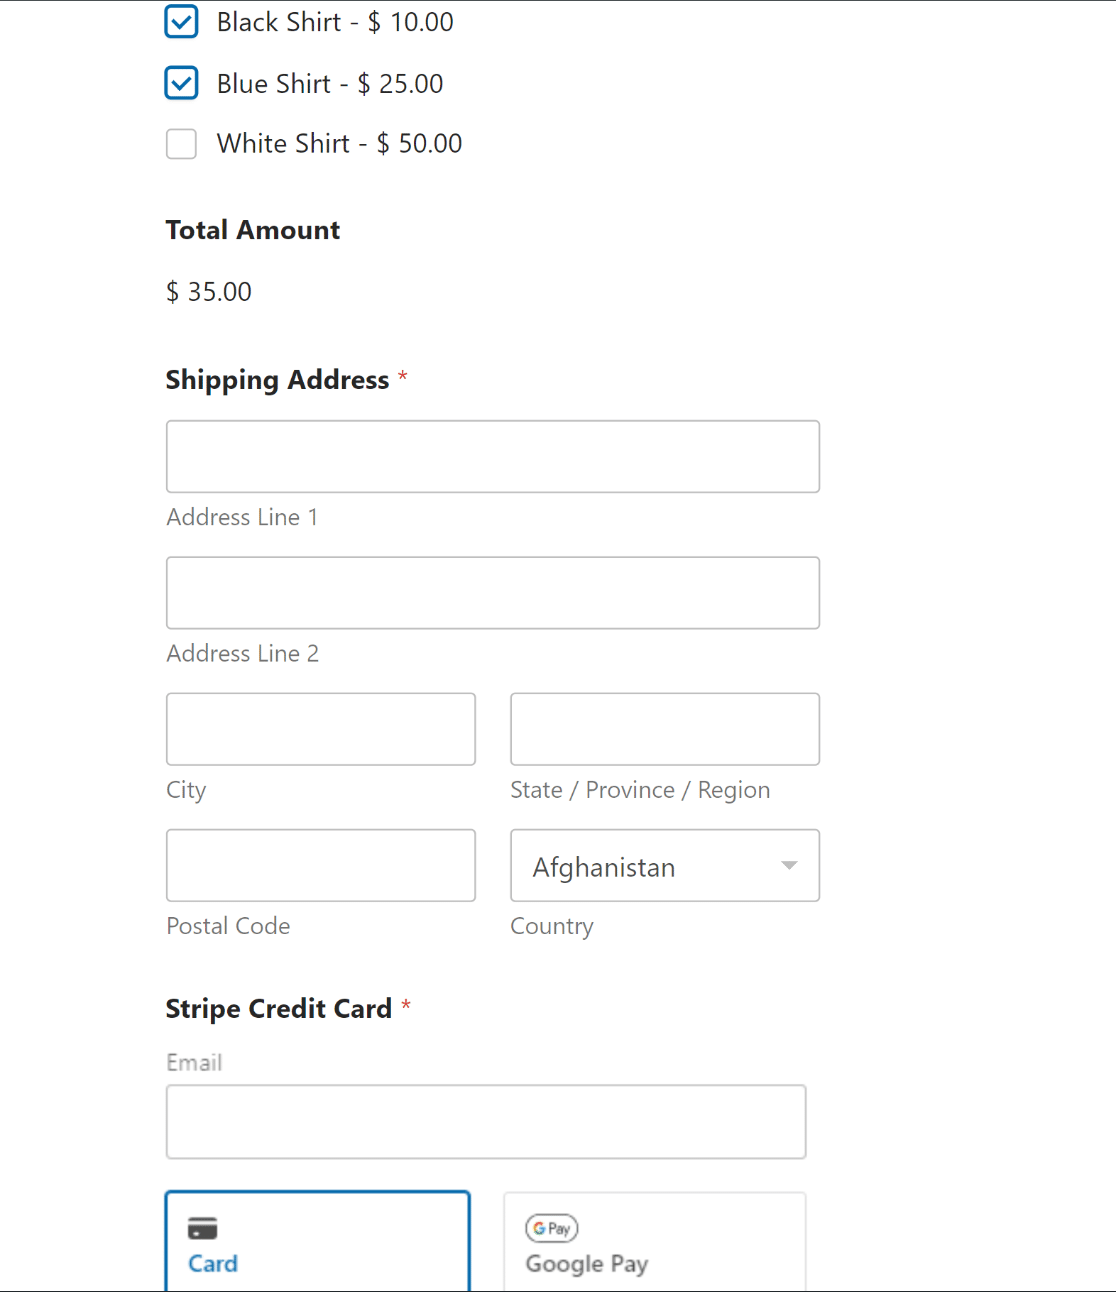 Order form published